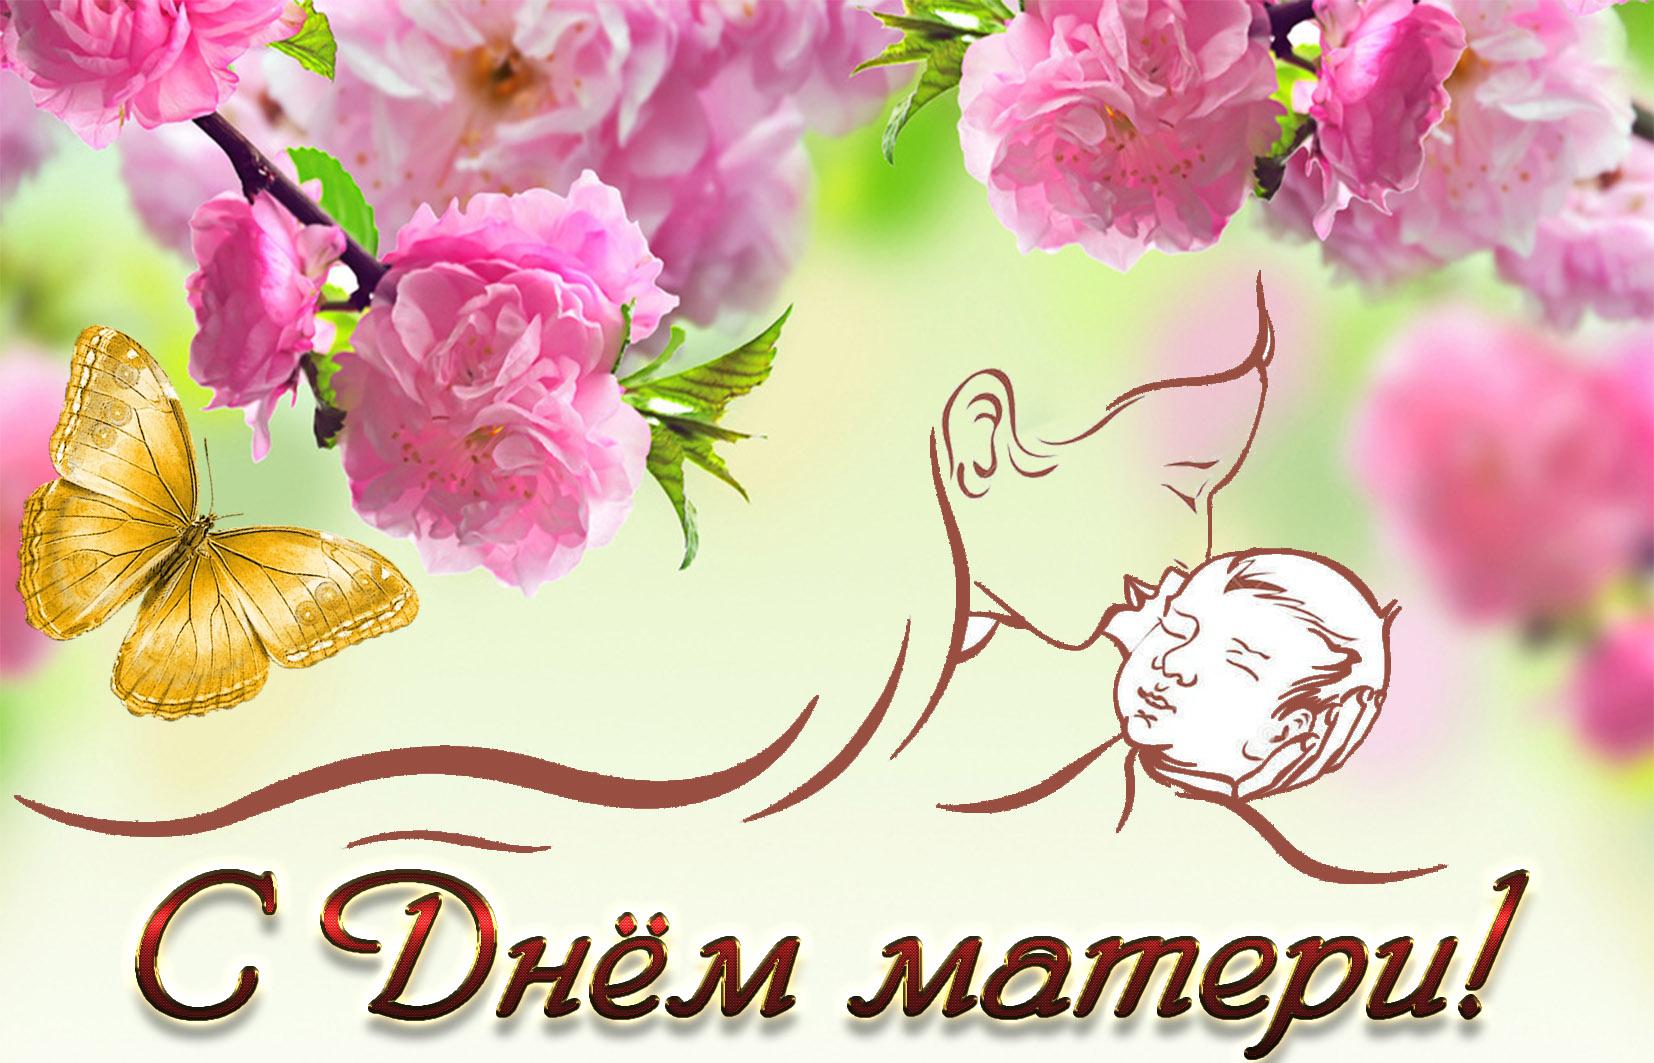 Международный-праздник-день-матери-открытка-с-днём-матери-мать-и-дитя-ребёнок-3680.jpg